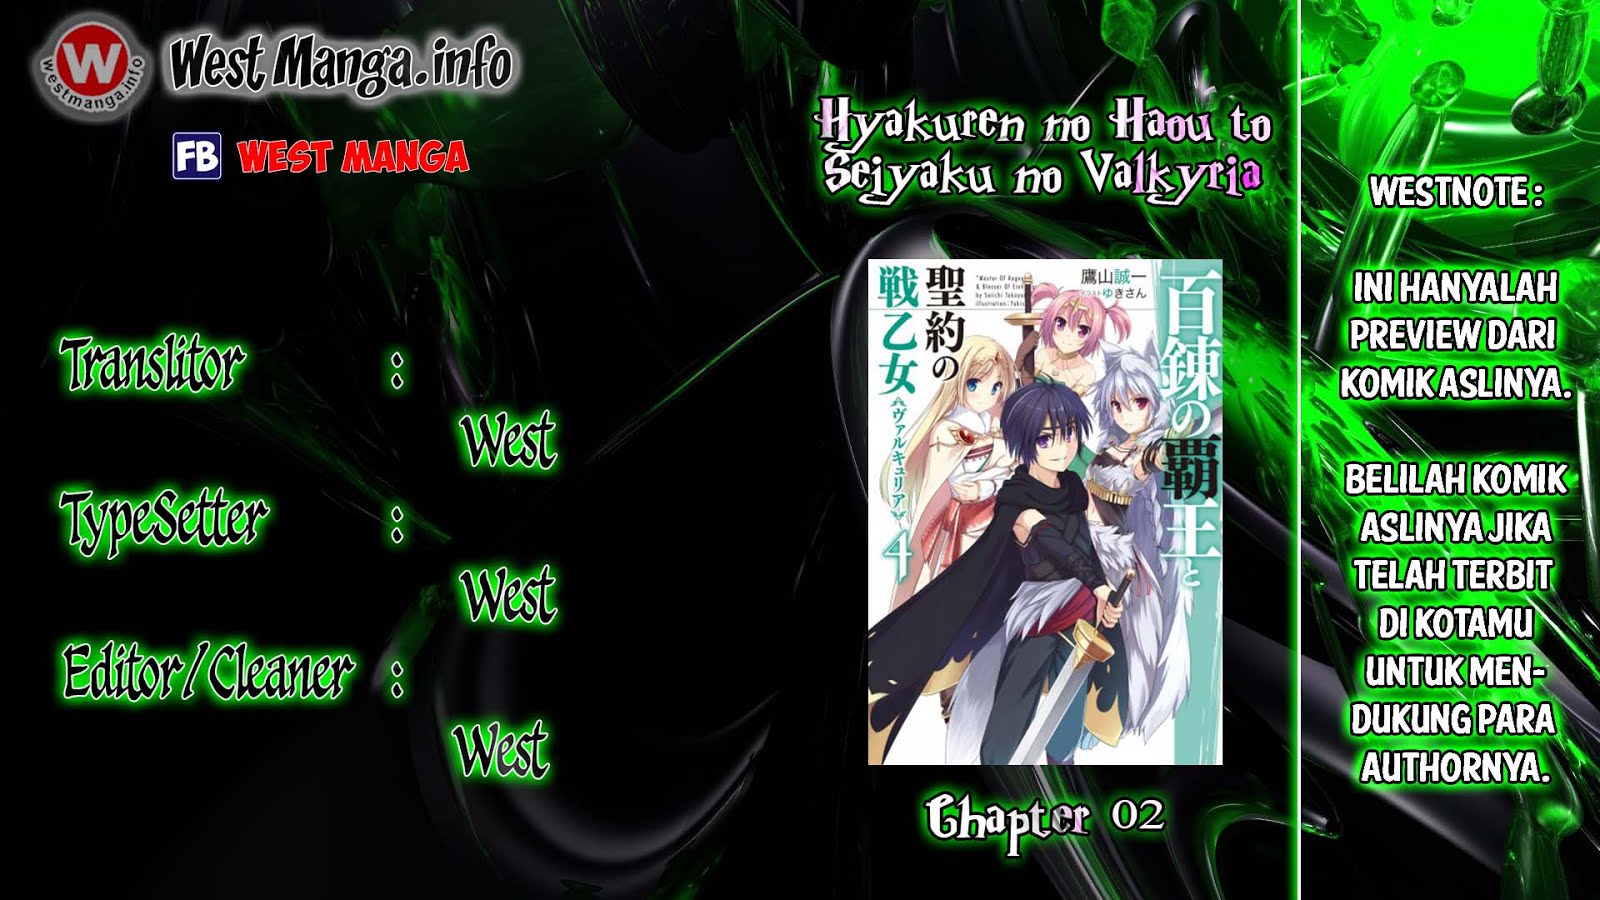 Hyakuren no Haou to Seiyaku no Valkyria Chapter 02